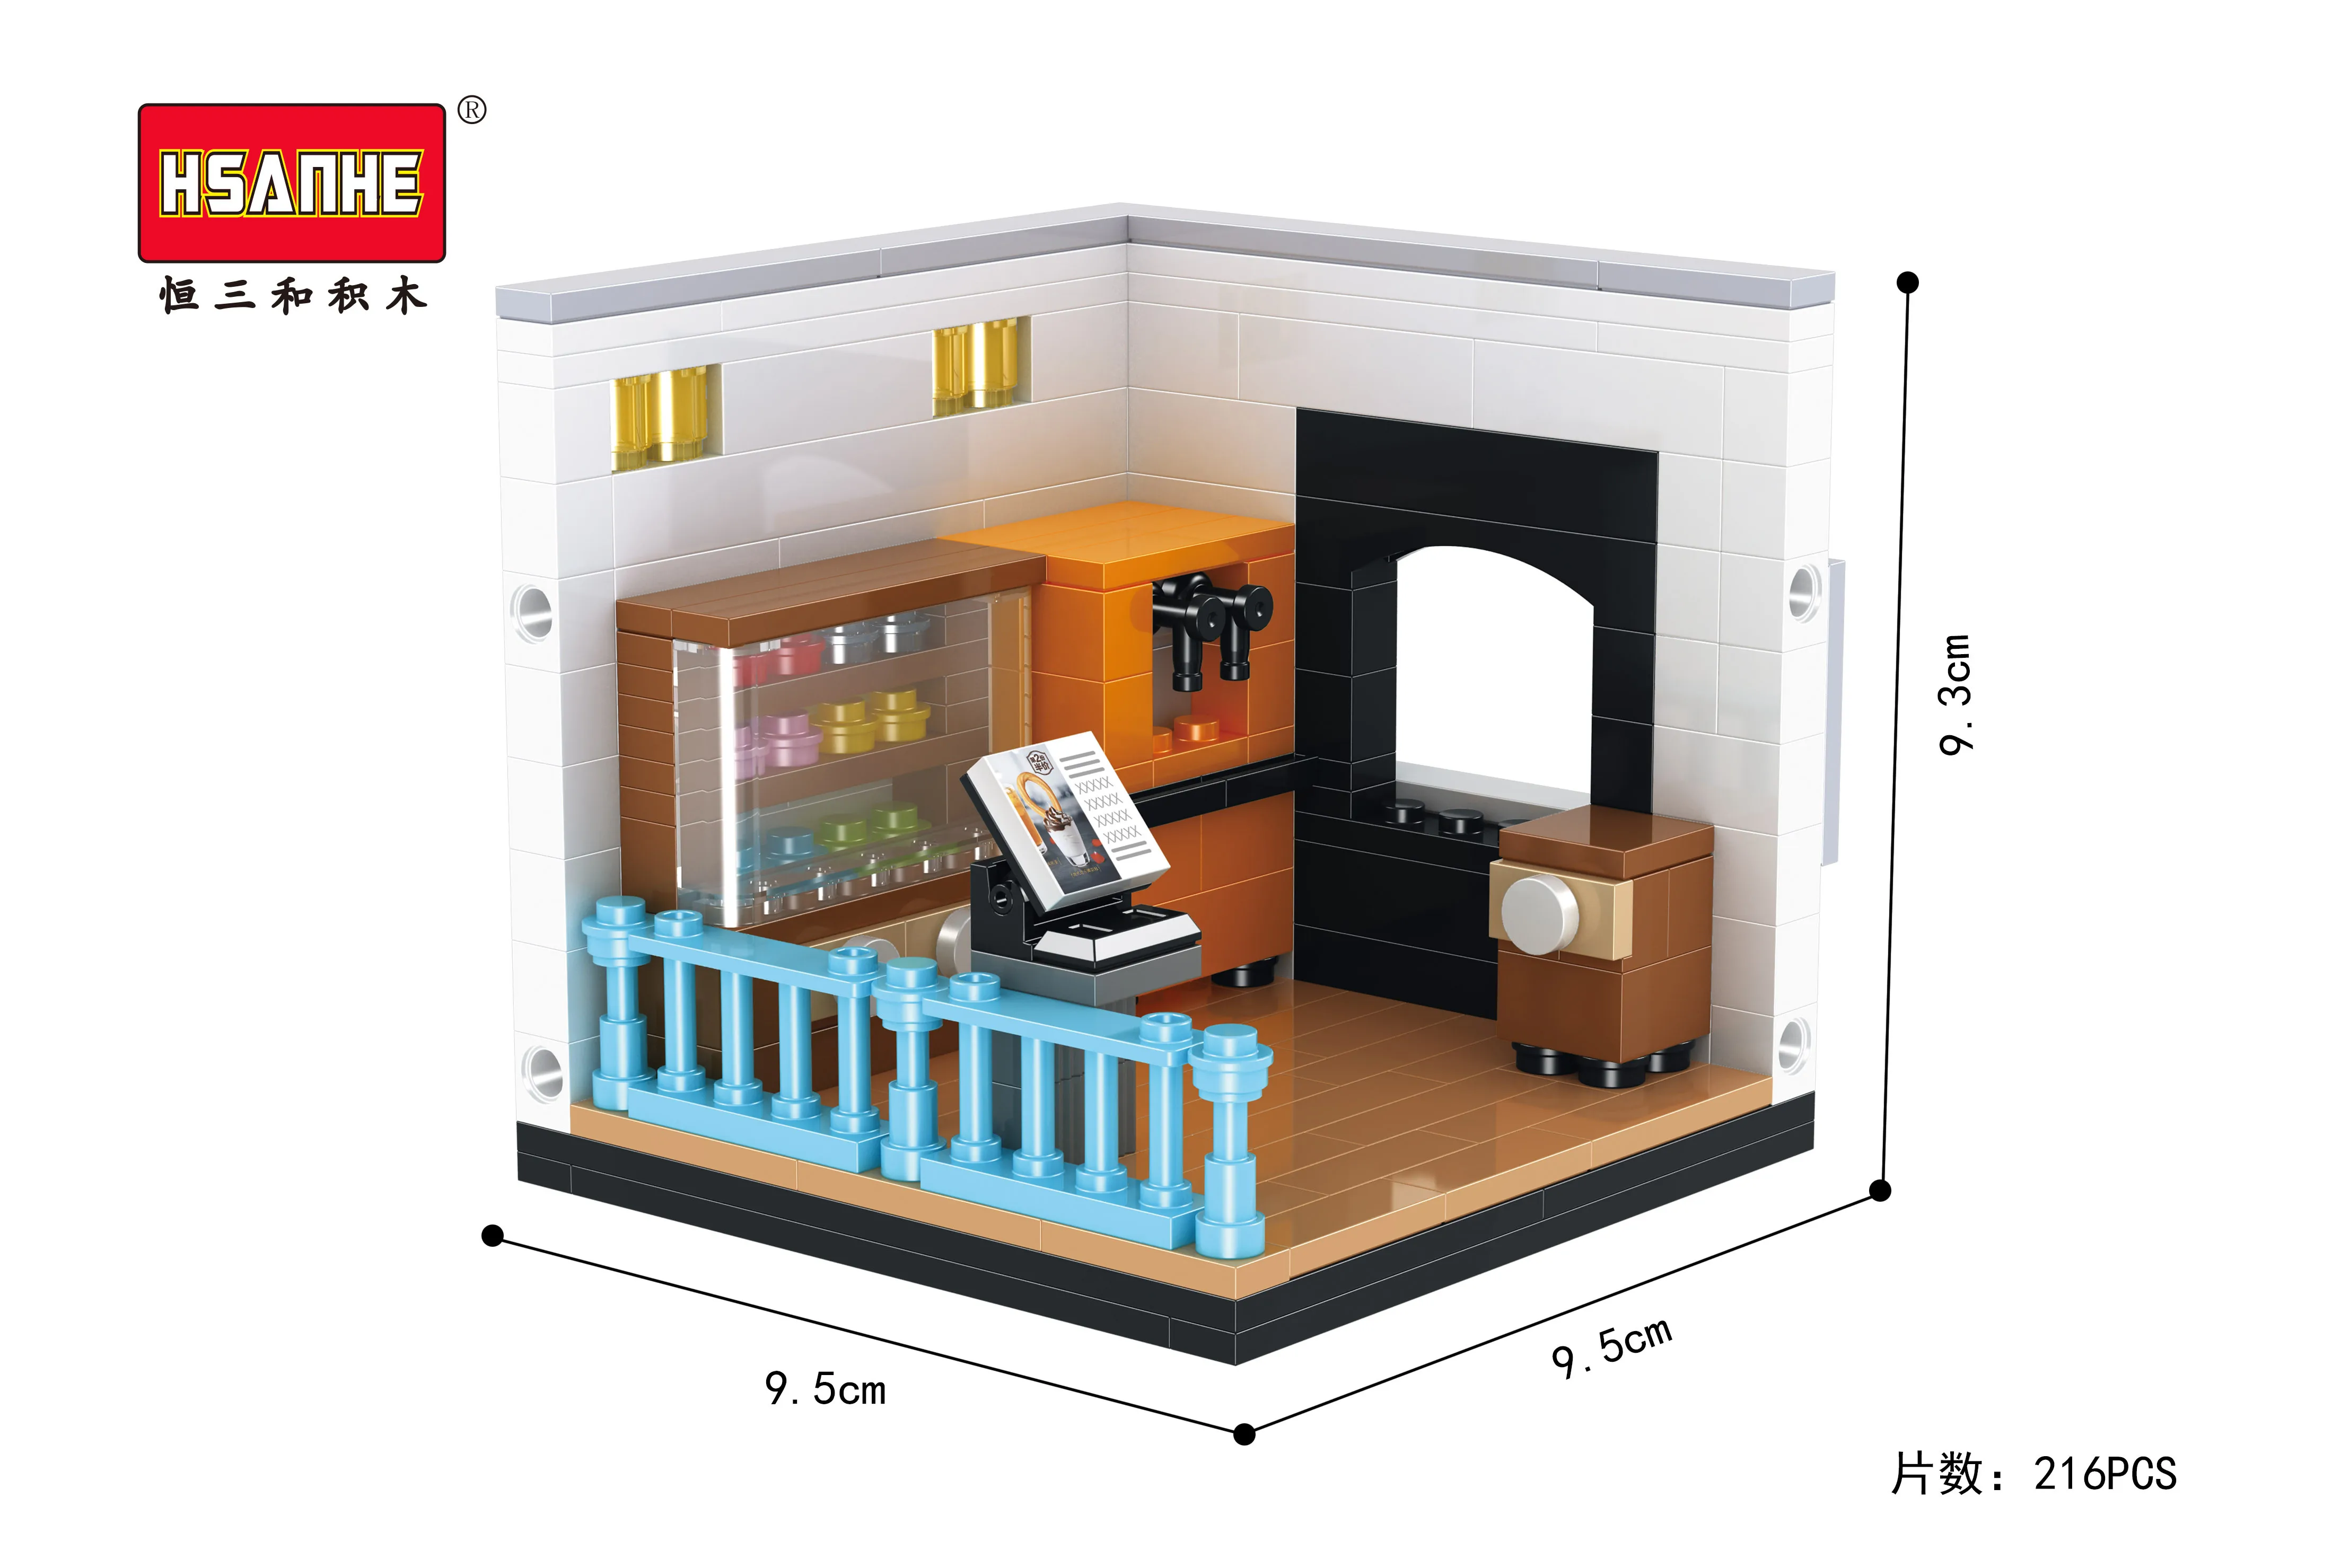 1038 шт 5 в 1 Мини-уличный вид McDonaldINGlys ресторанный дом строительные блоки модель совместимая Архитектура игрушки